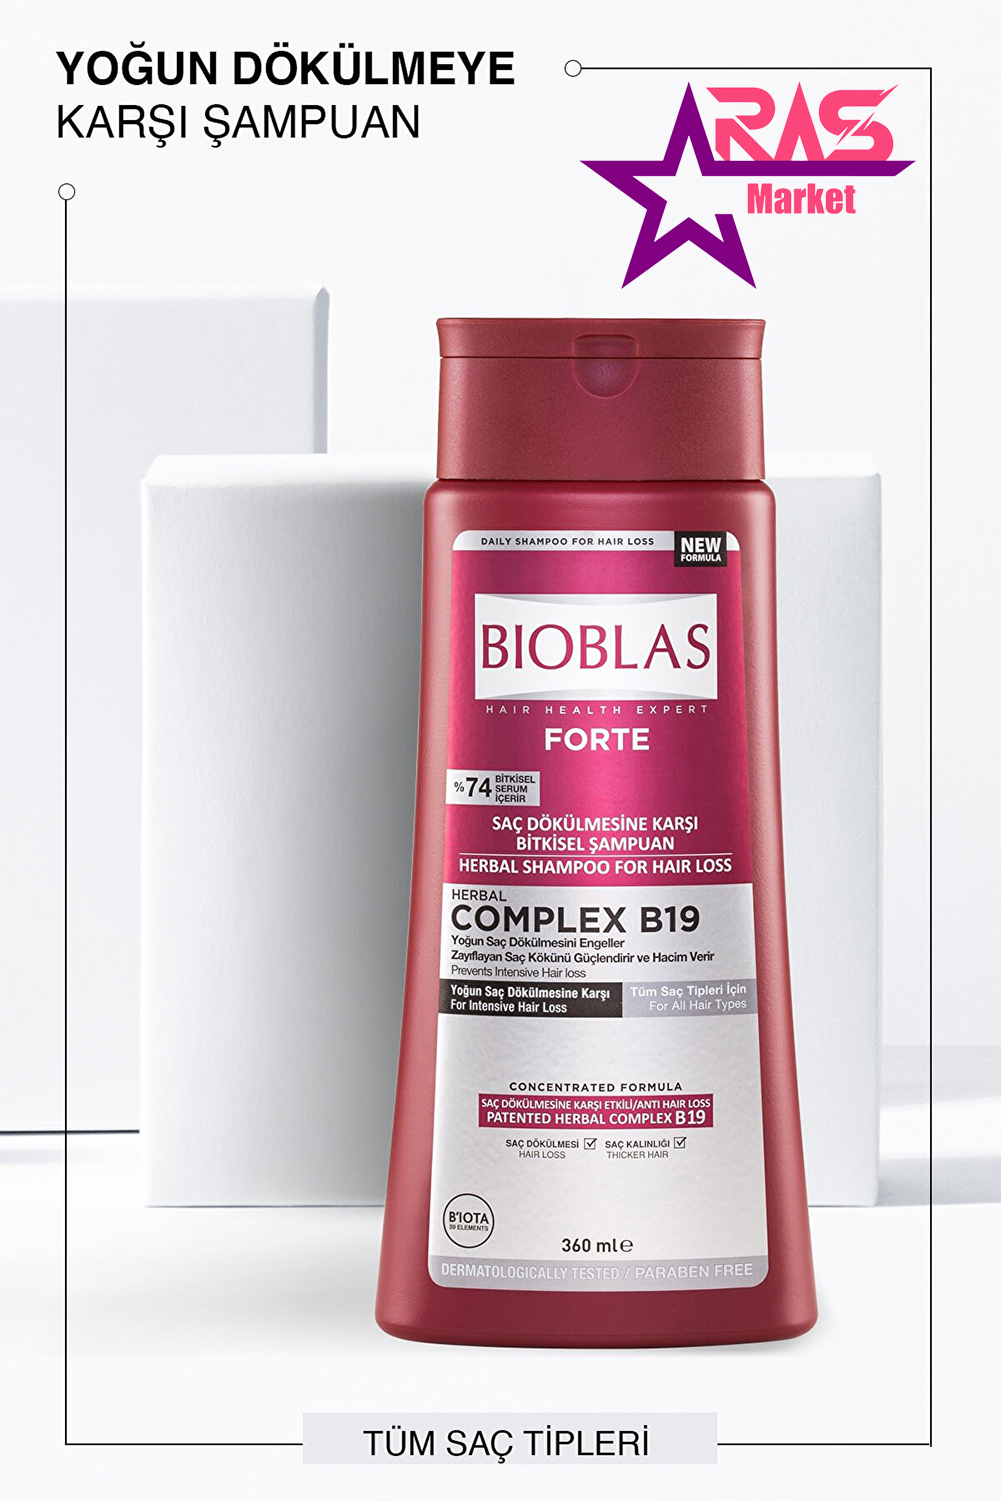 شامپو بیوبلاس فورت گیاهی ضد ریزش مو مناسب انواع مو 360 میلی لیتر ، خرید اینترنتی محصولات شوینده و بهداشتی